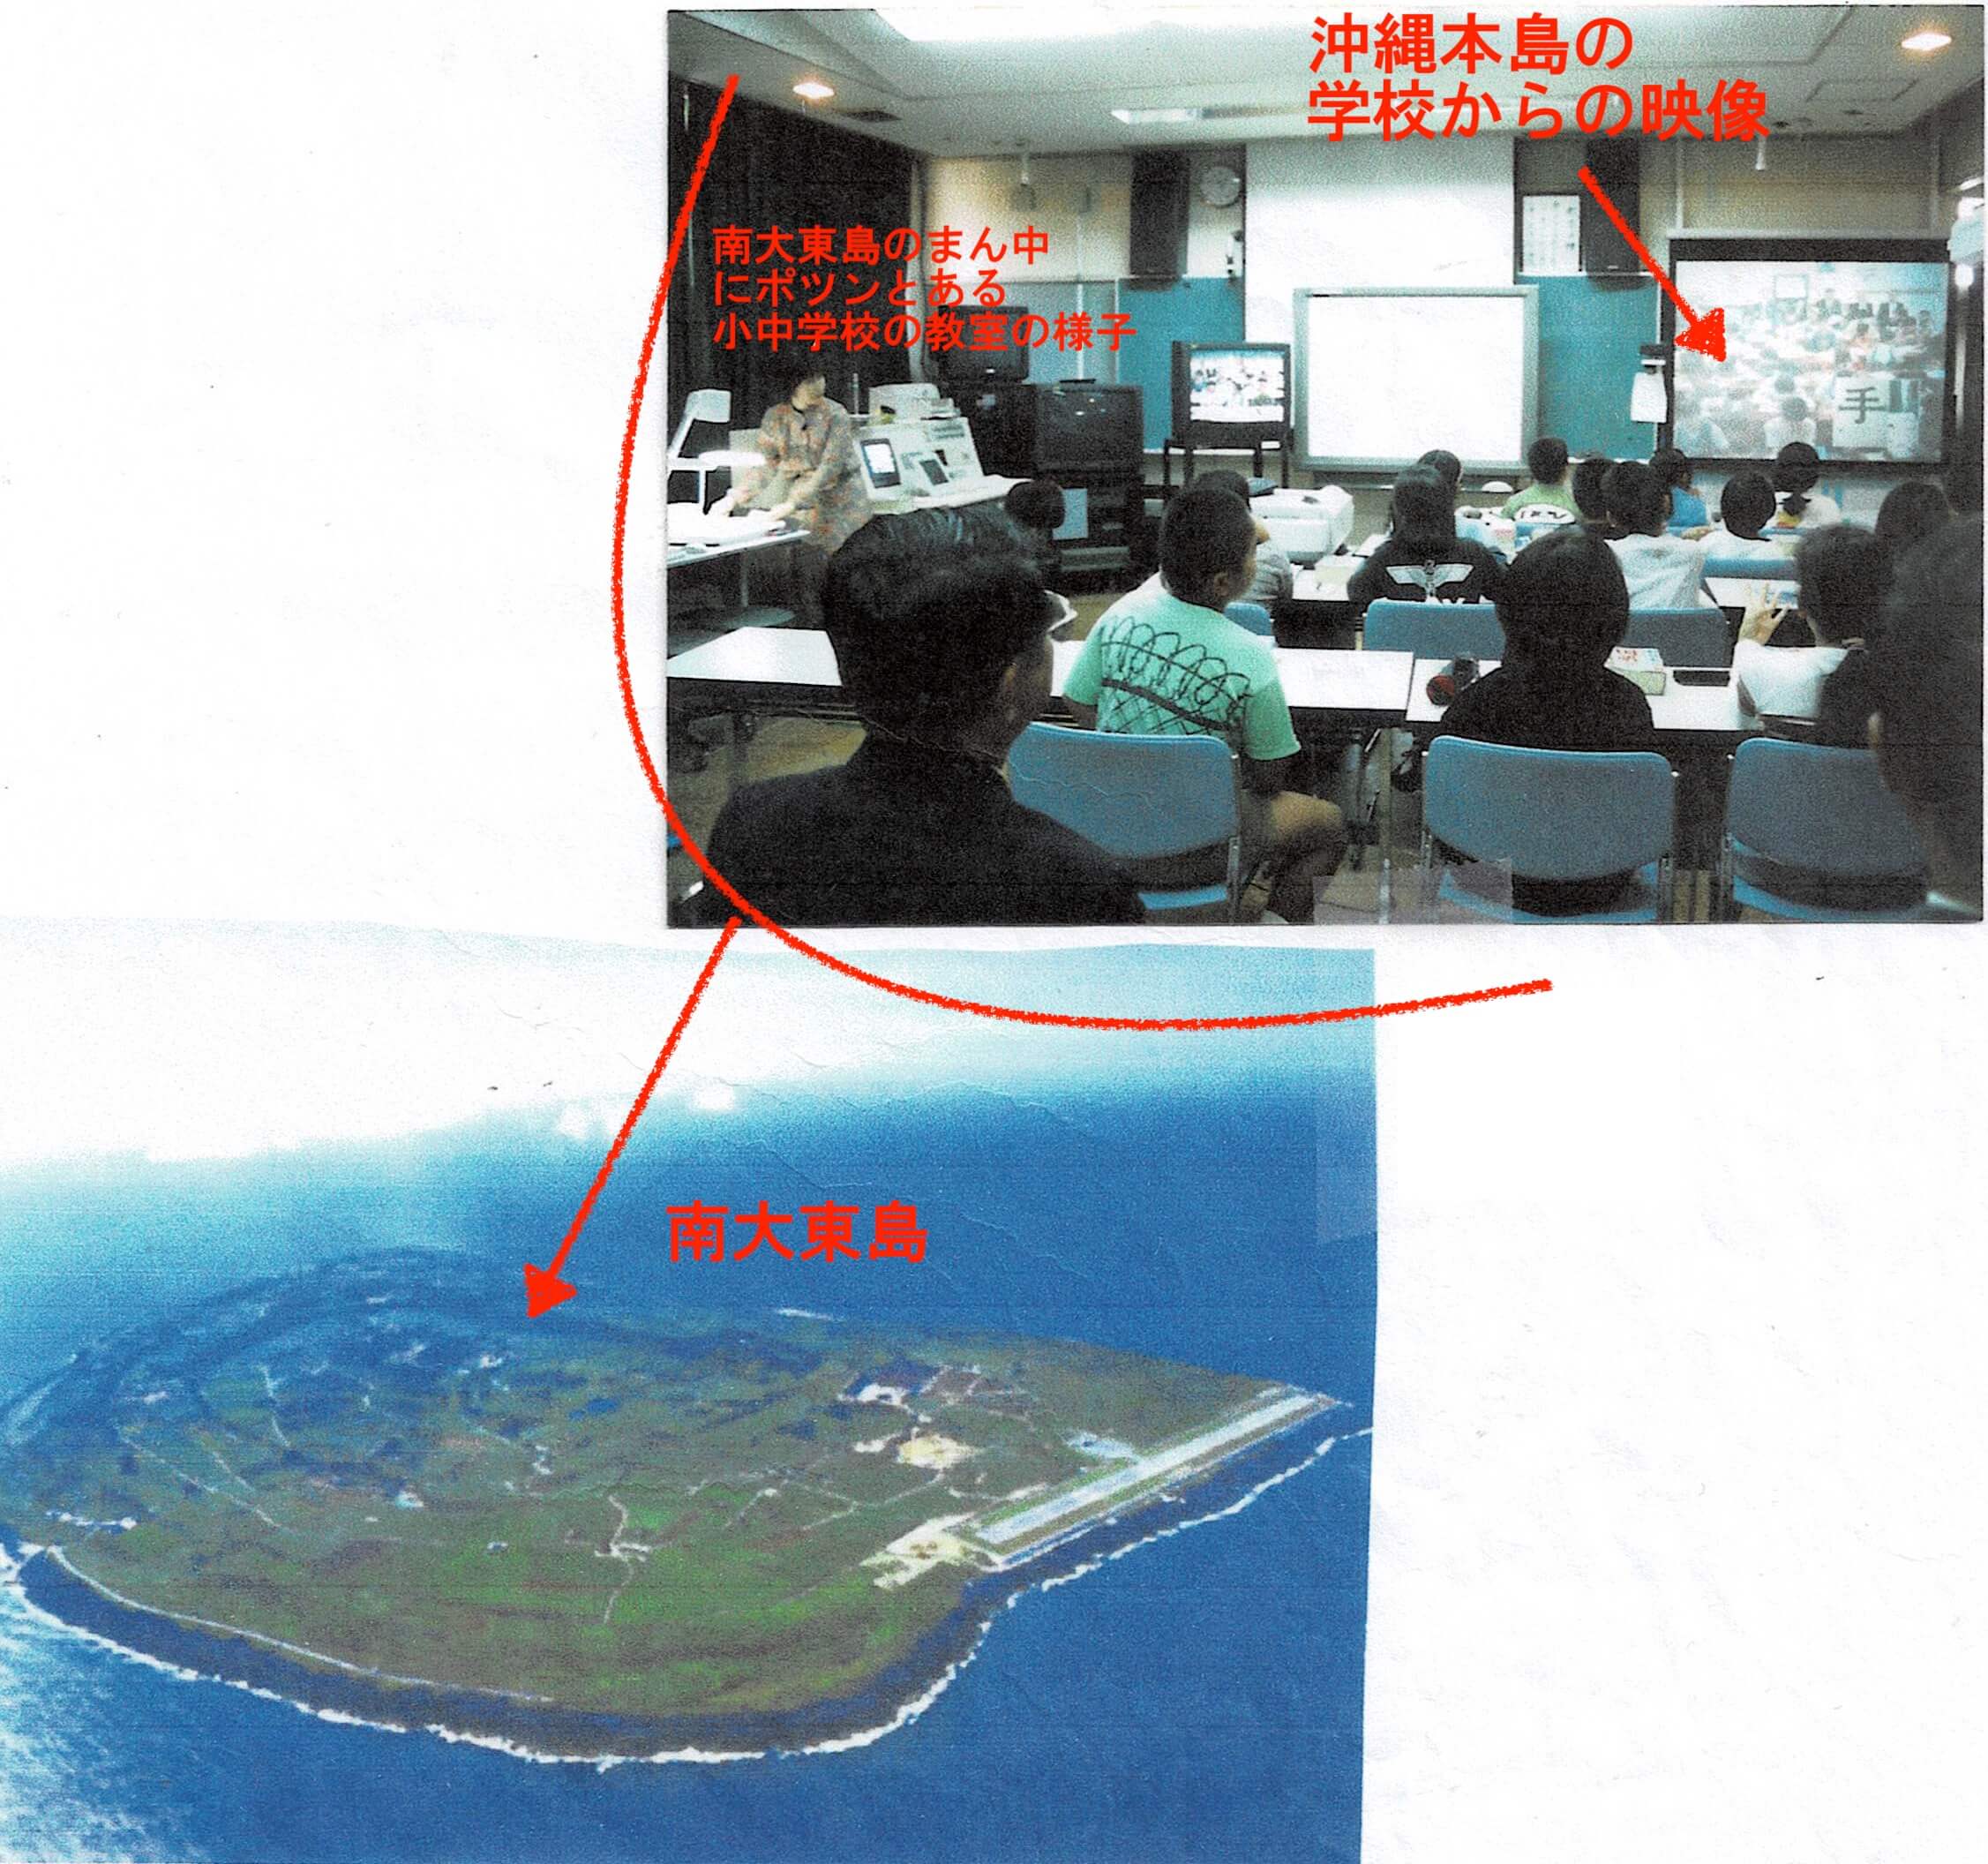 沖縄本島と南大東島の小学校の両方を訪問。双方向のネット遠隔授業を視察、助言。